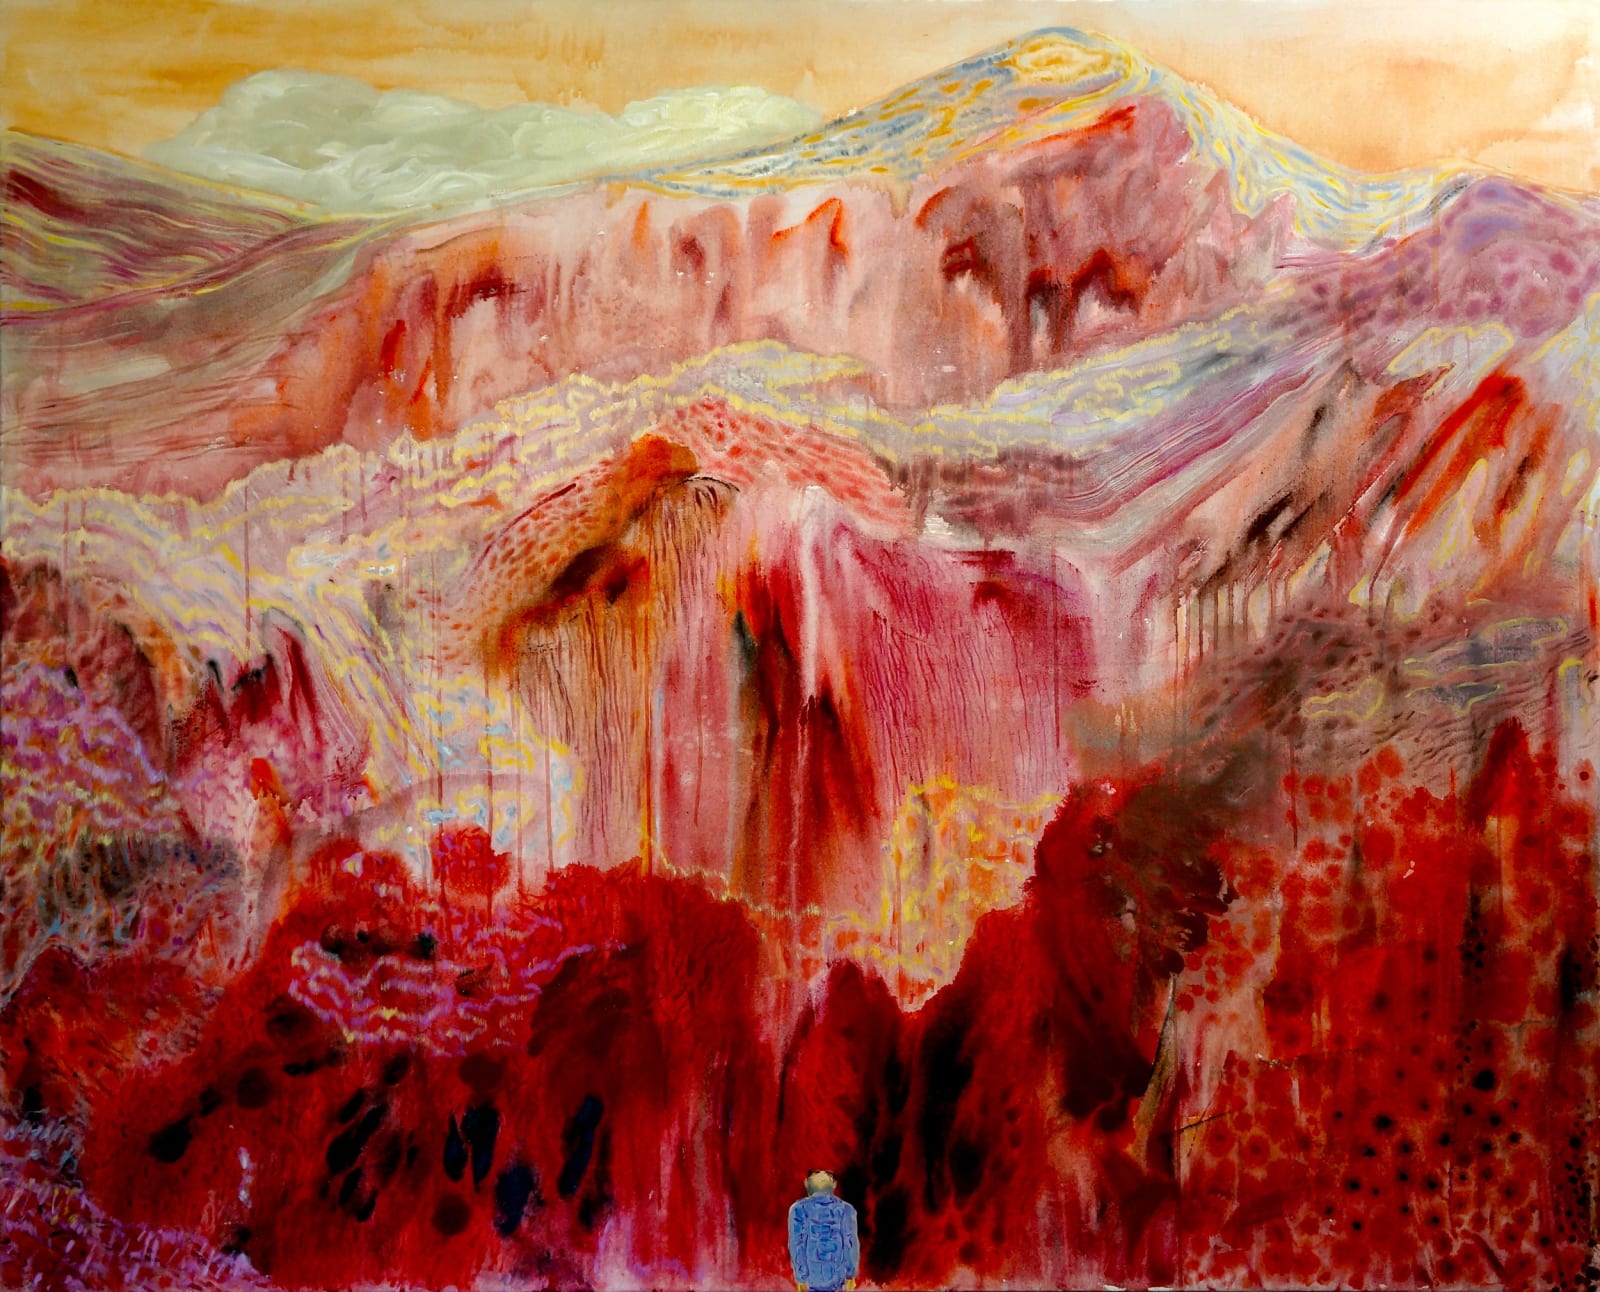 Xi Zhang, The Mountain Man Bob, 2014